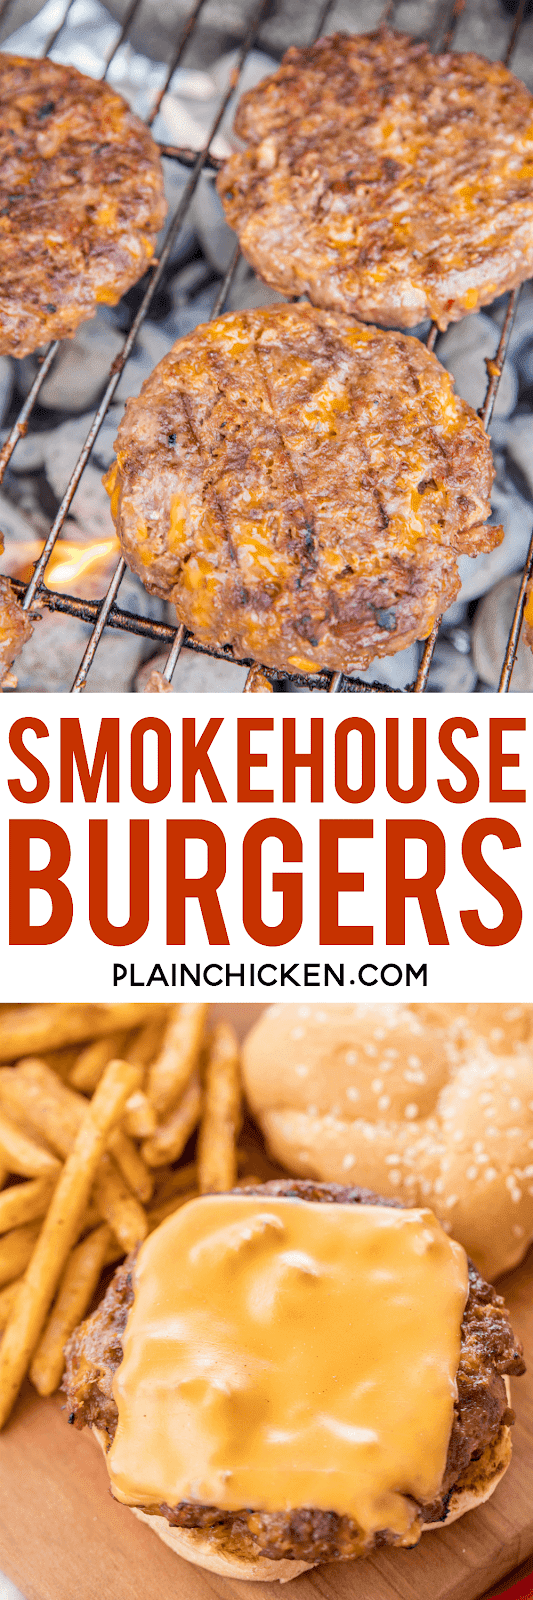 Smokehouse Burgers